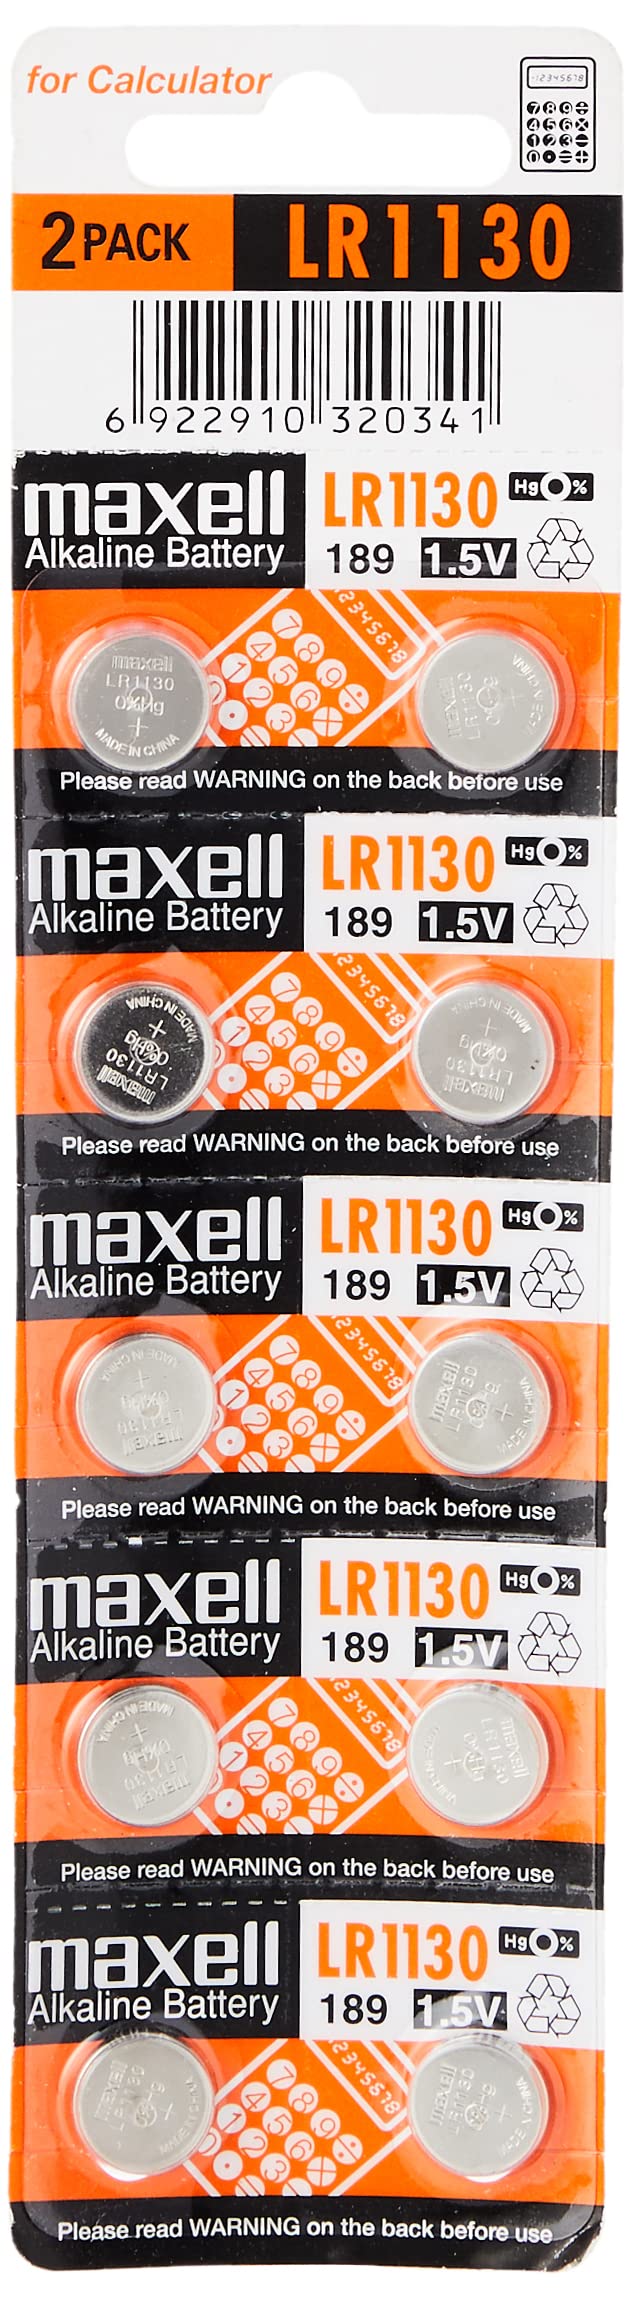 Maxell LR1130 Alkaline Battery 1.5V, 10 Pack